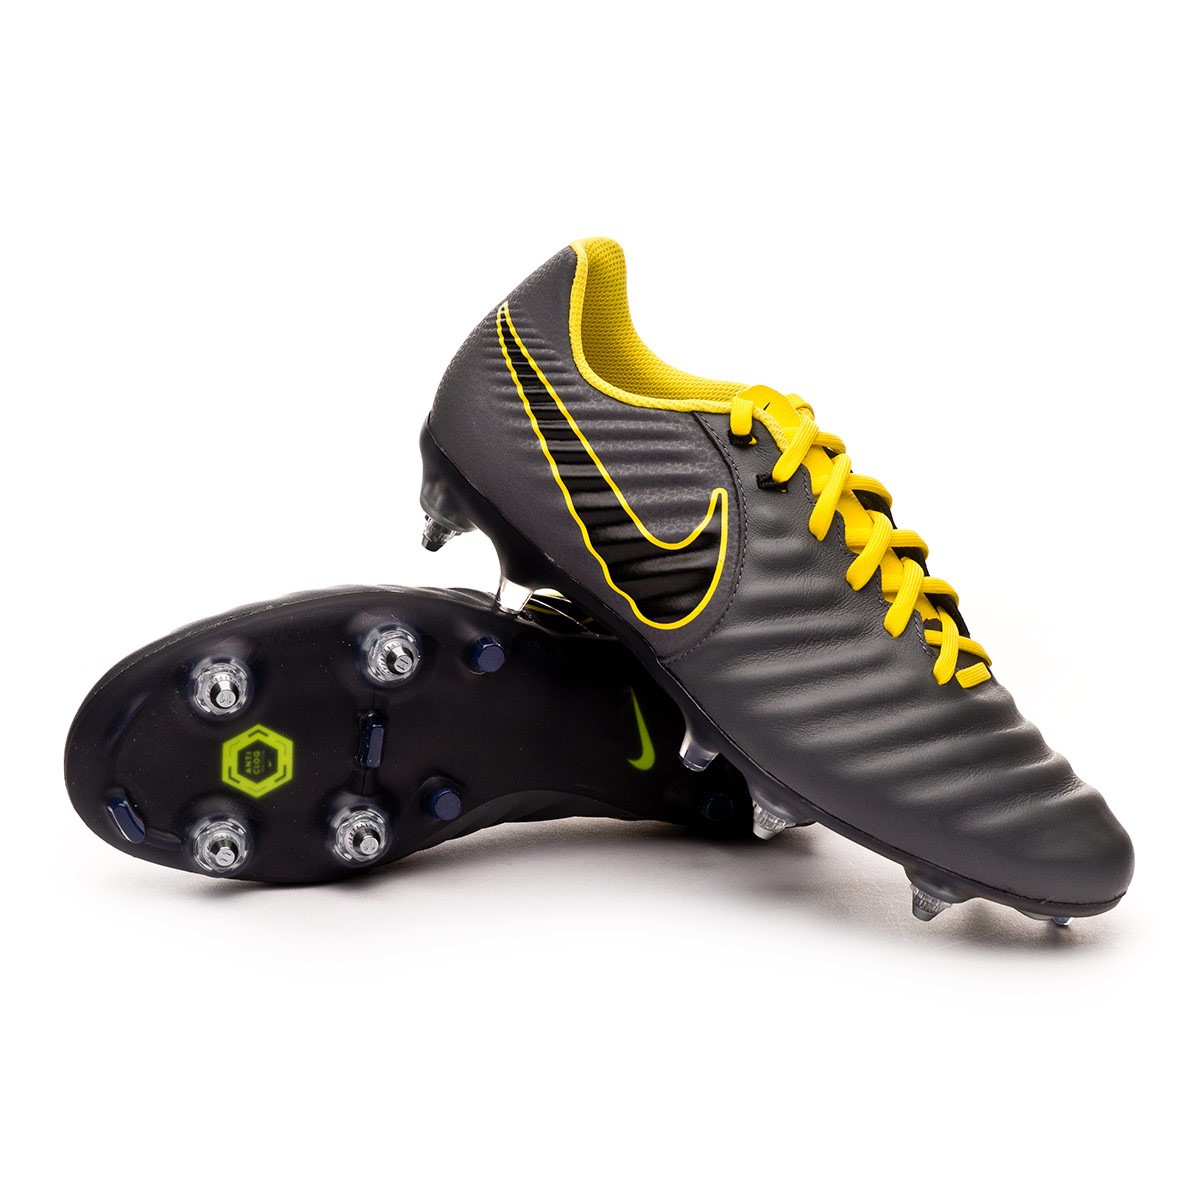 Zapatos de fútbol Nike Tiempo Legend VII Academy SG-Pro ACC Dark  grey-Black-Optical yellow - Tienda de fútbol Fútbol Emotion